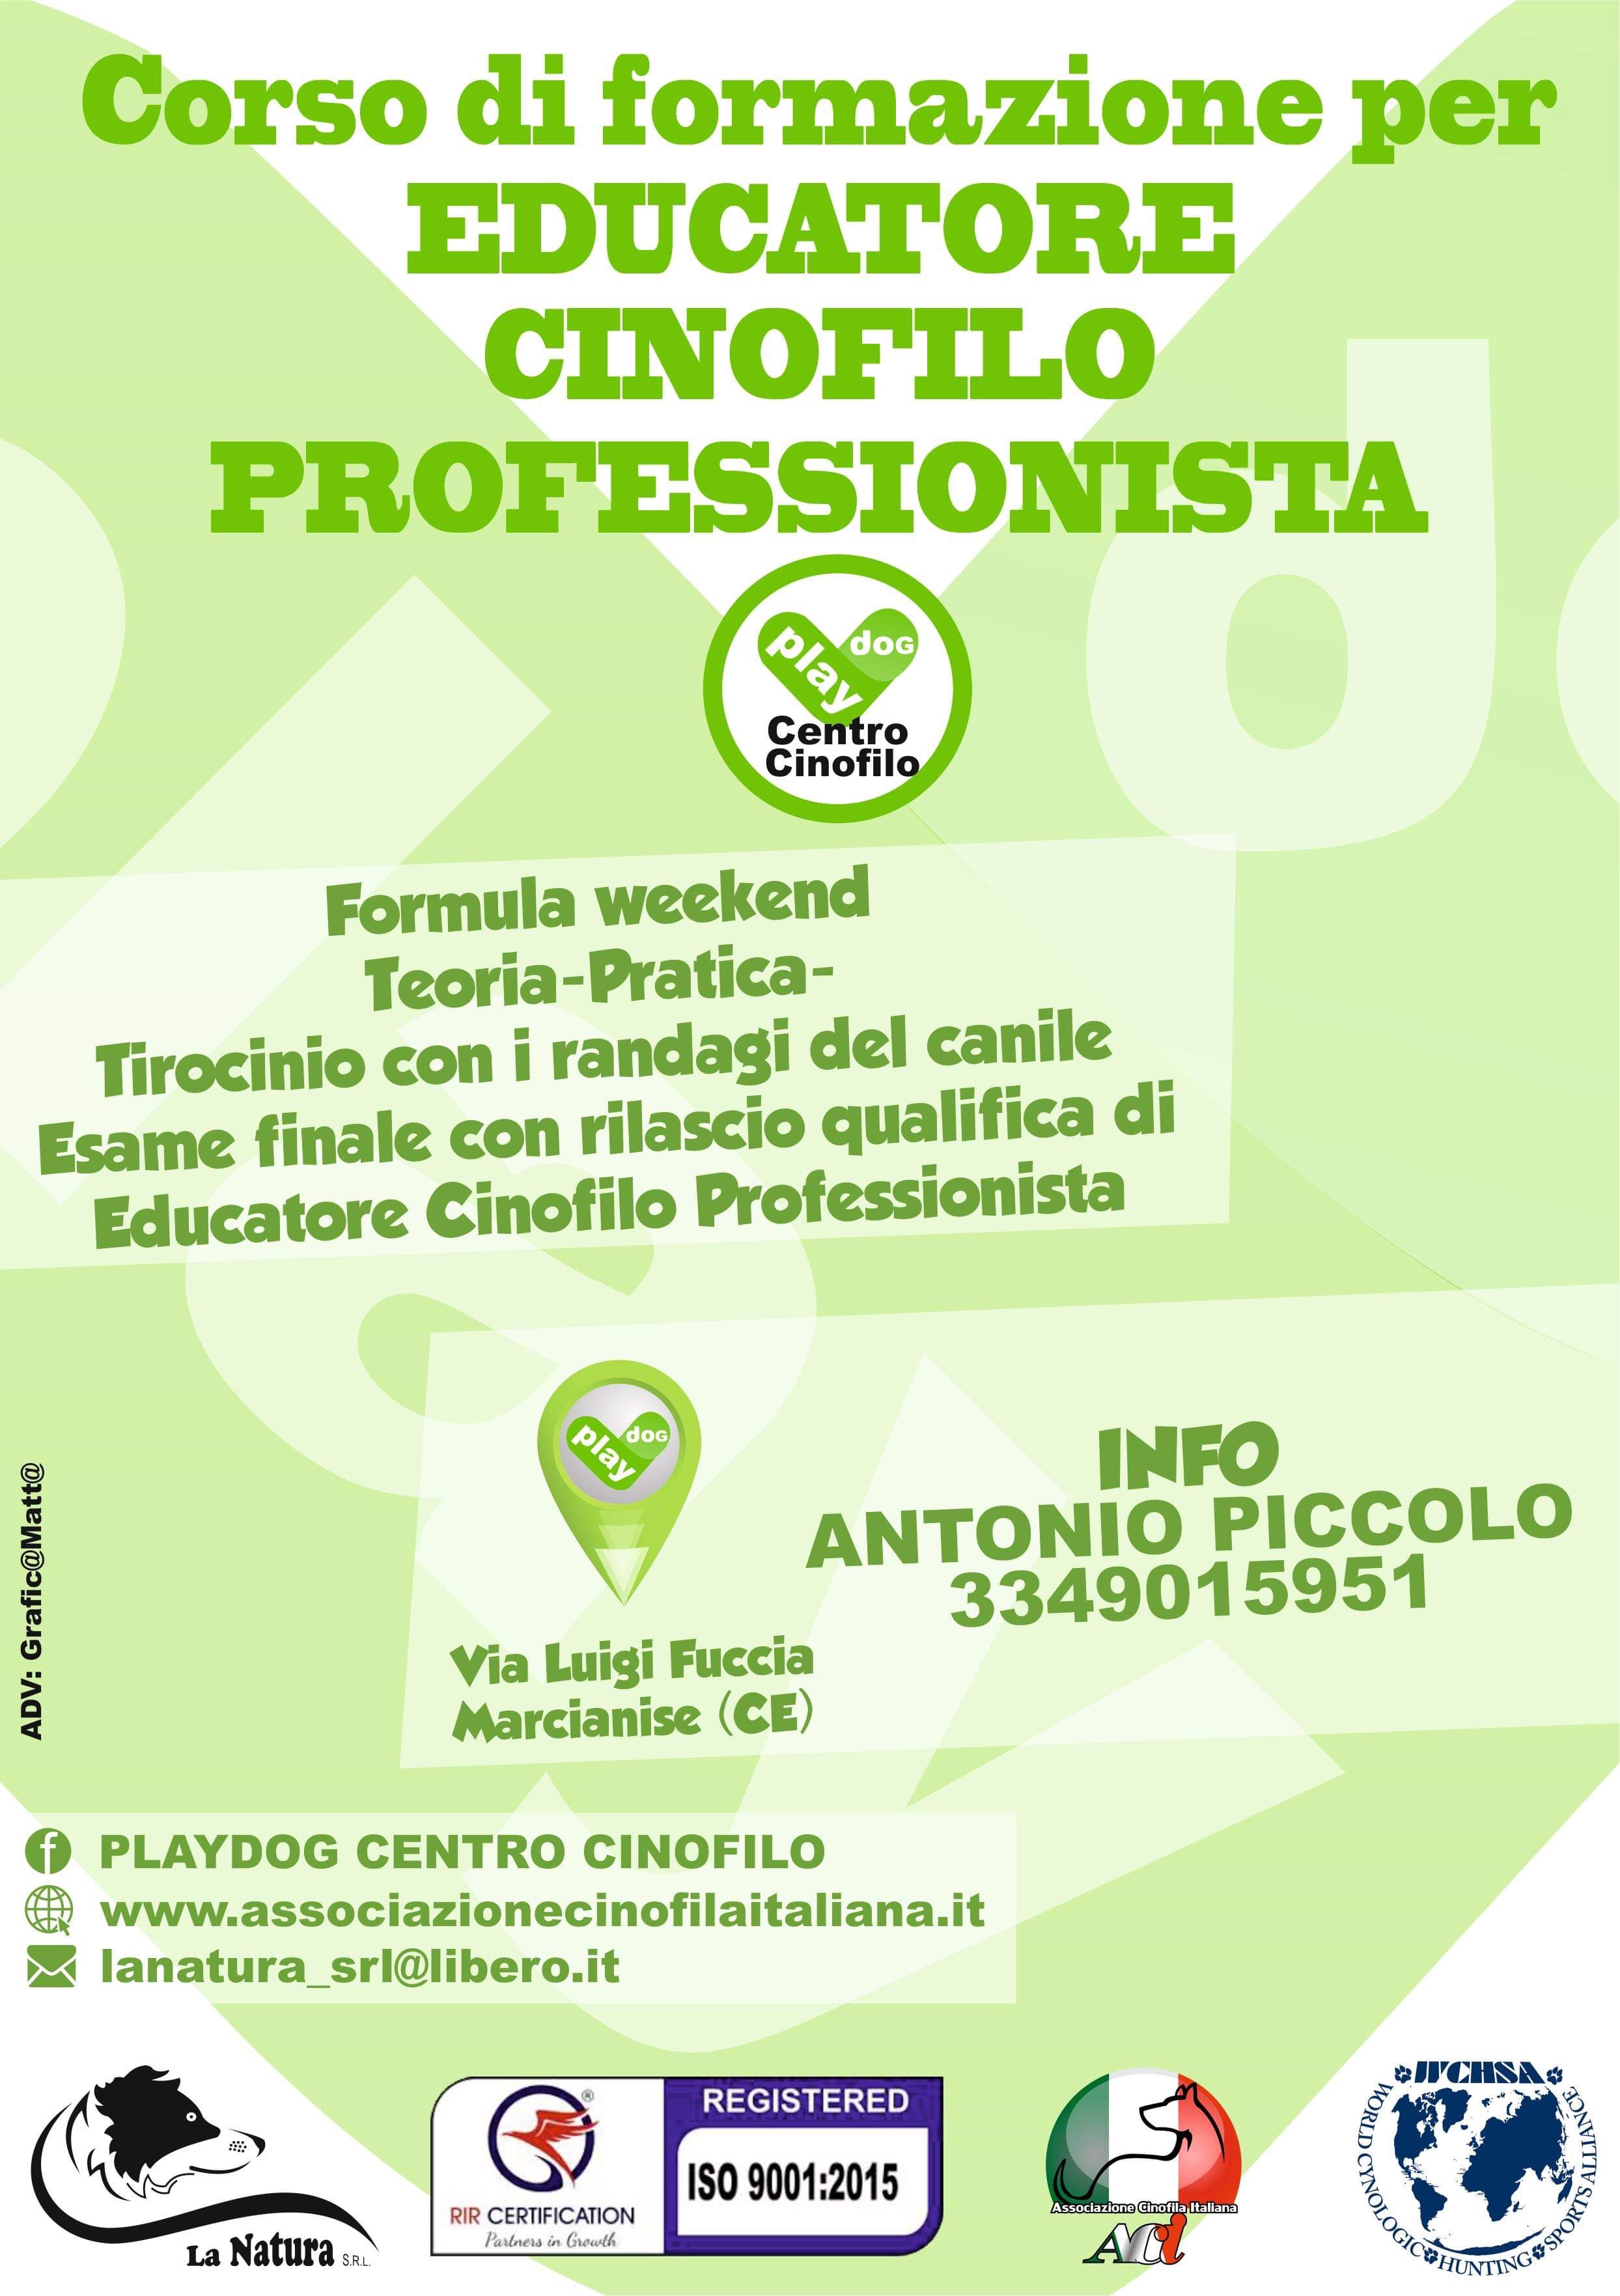 EDUCATORE CINOFILO PROFESSIONISTAcorso di formazione per Educatore Cinofilo Professionista 
start 22/03/2019